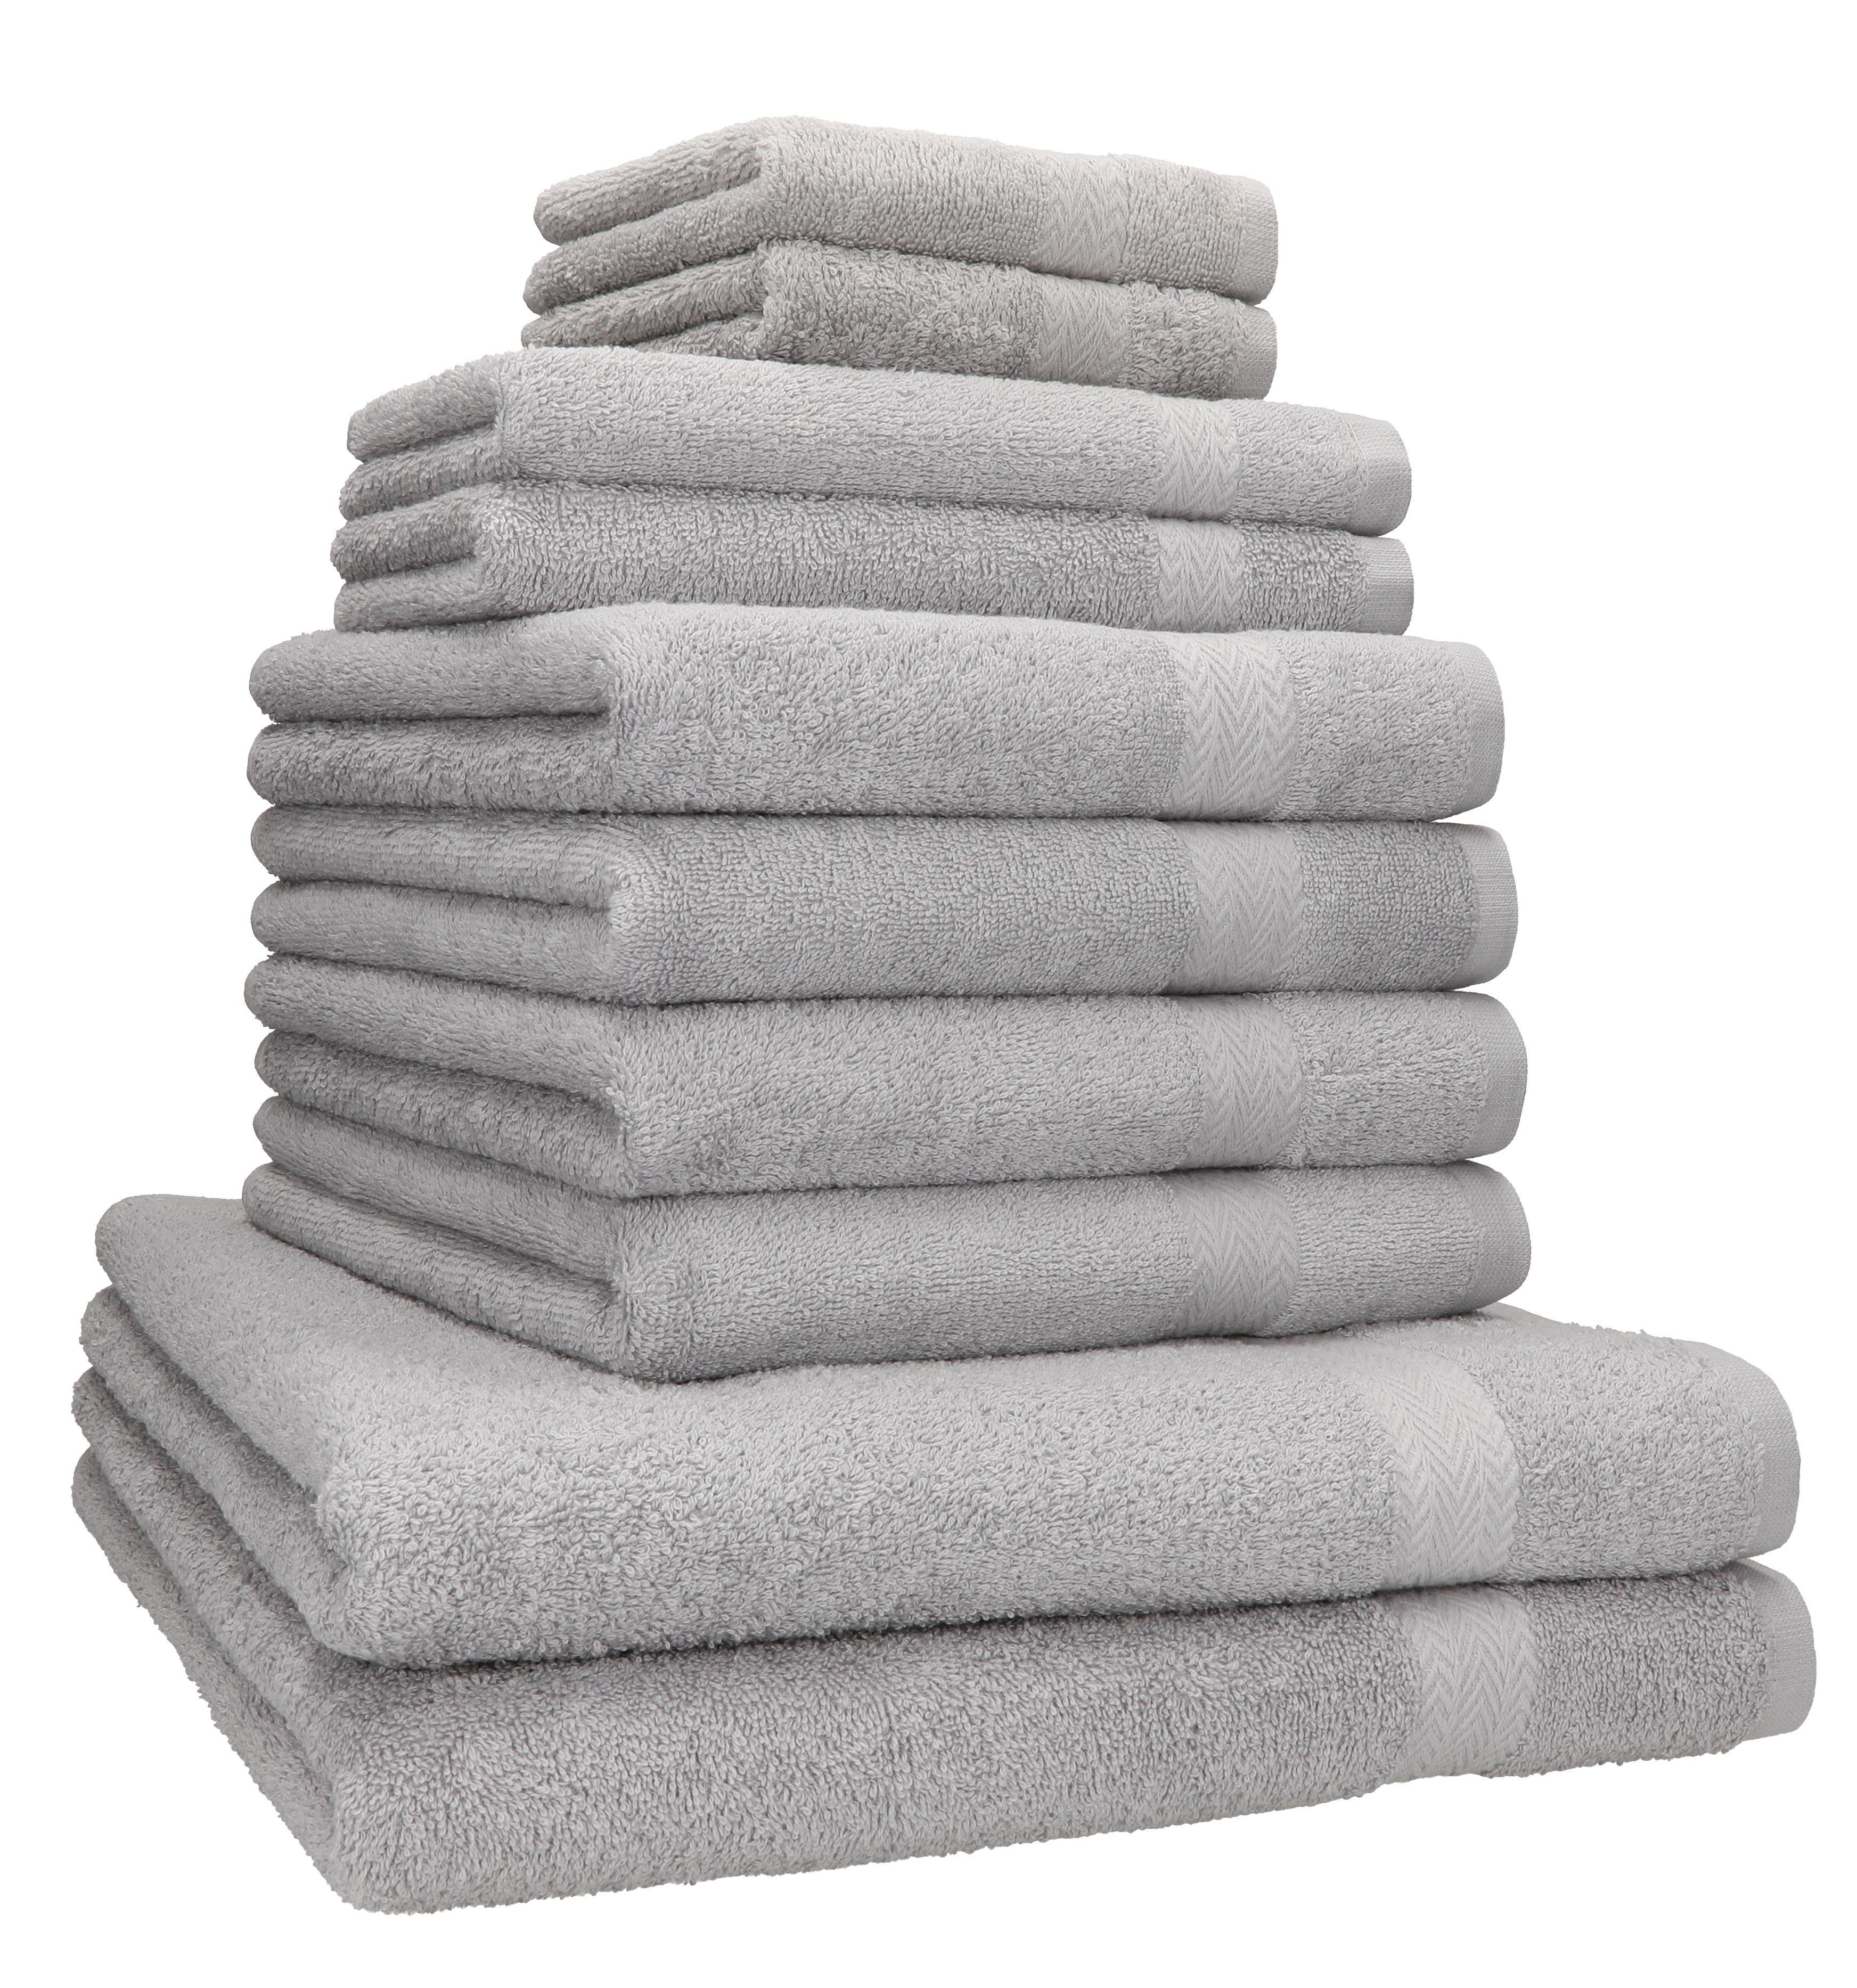 Betz Handtuch Set 10-TLG. Handtuch-Set Classic 100% Baumwolle 2 Duschtücher 4 Handtücher 2 Gästetücher 2 Seiftücher, 100% Baumwolle, (10-tlg) silber